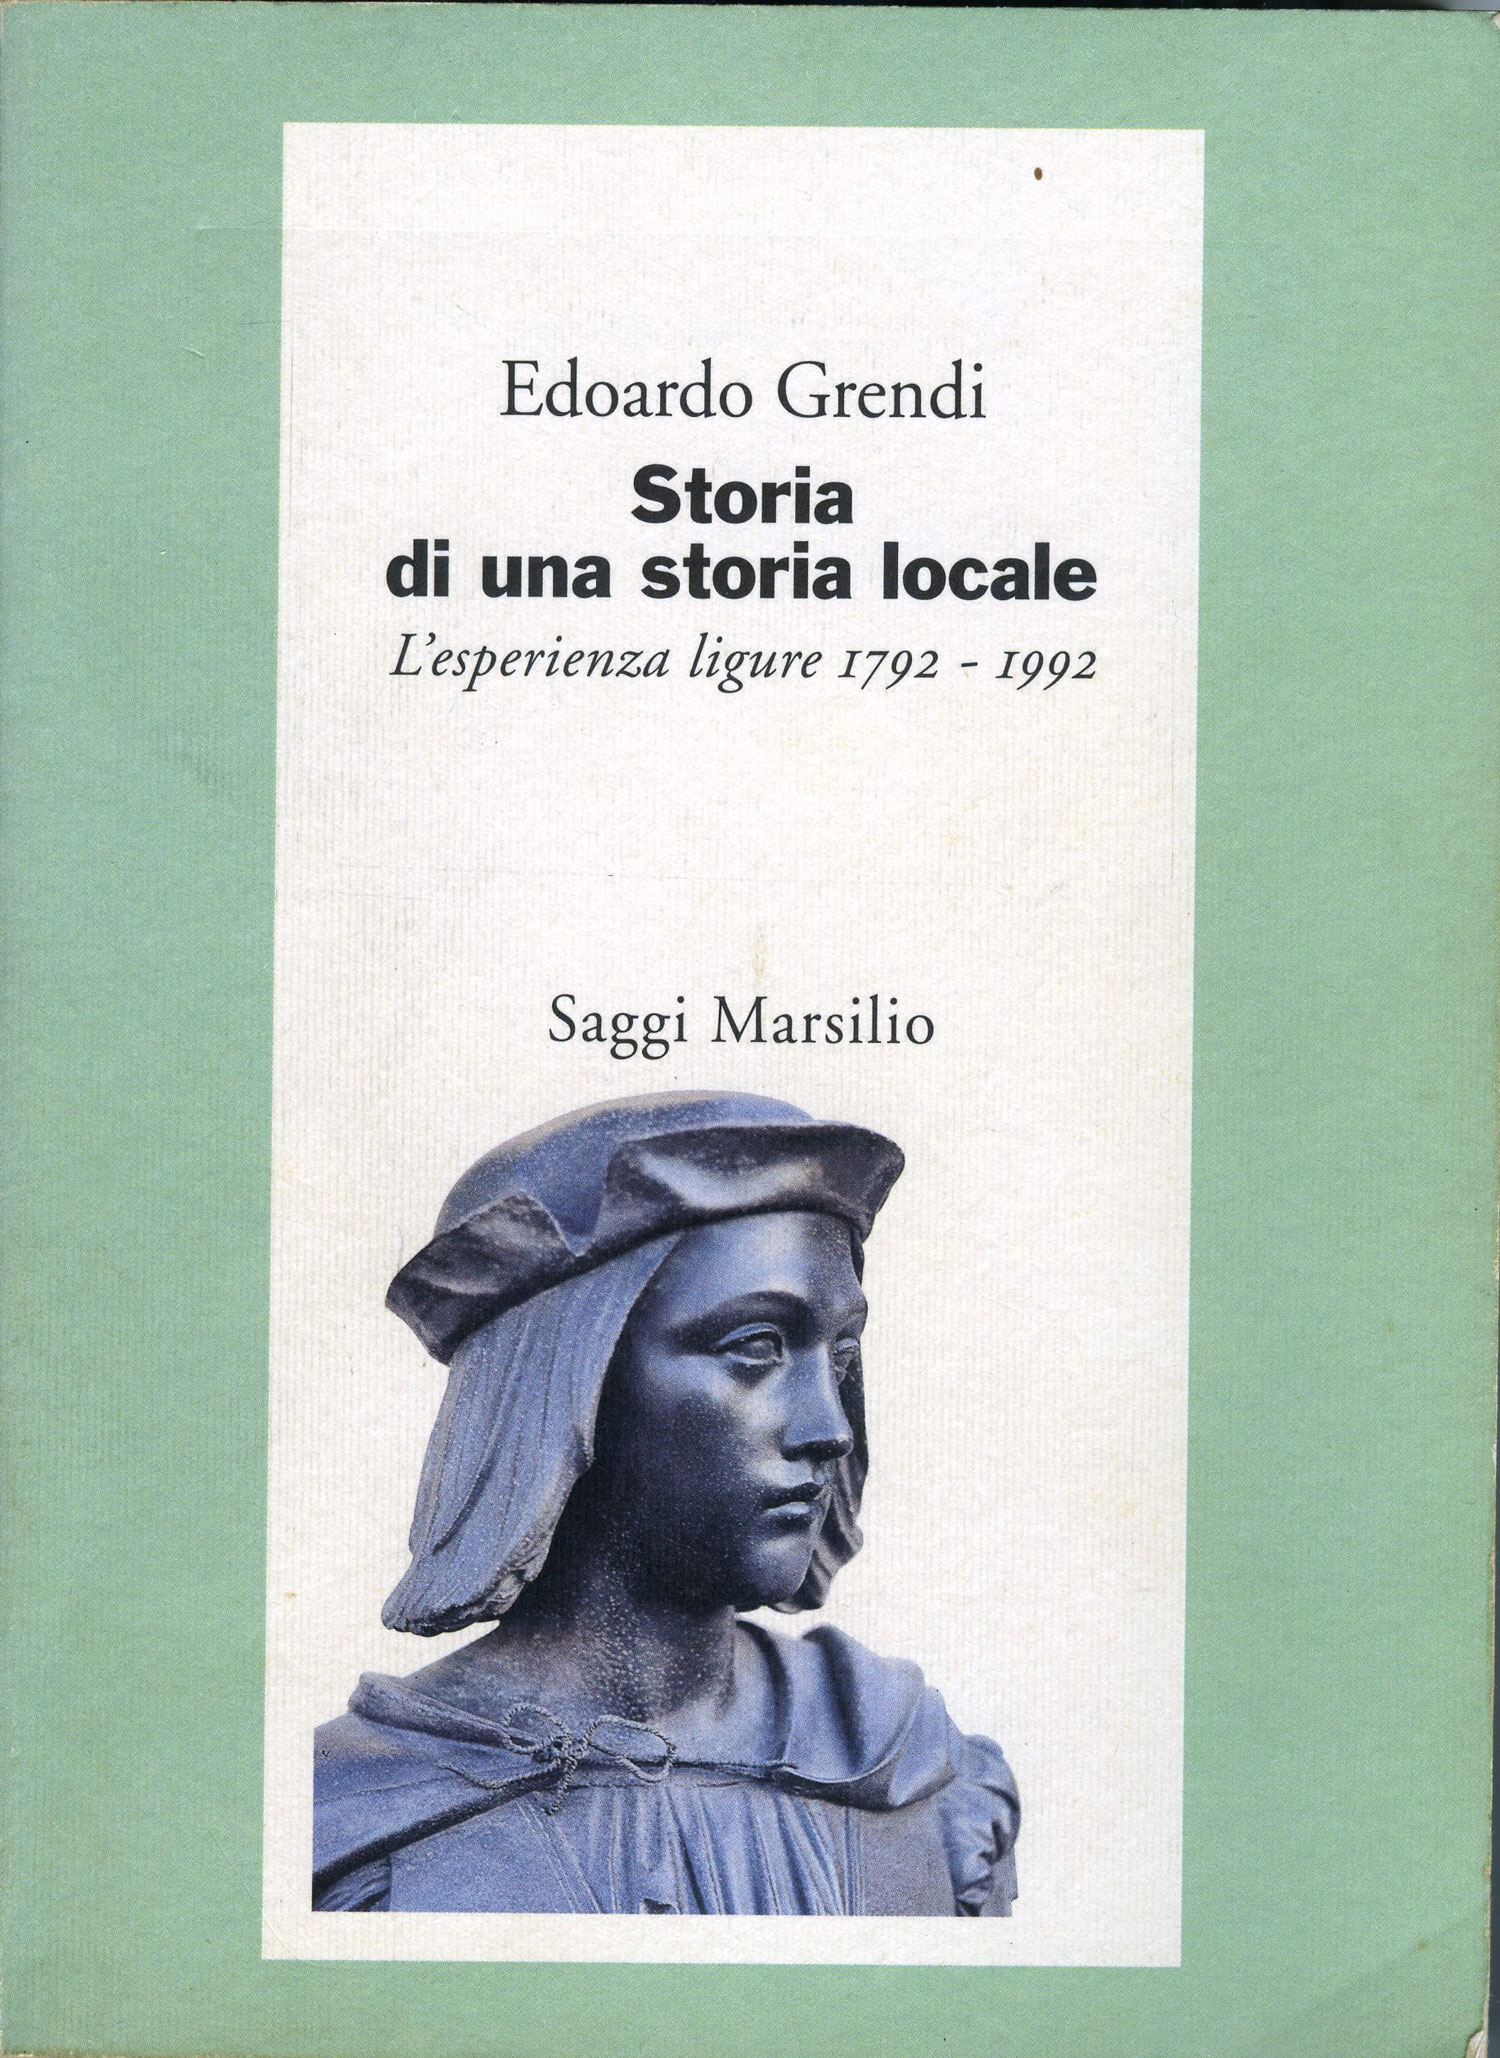 copertina del libro Storia di una storia locale